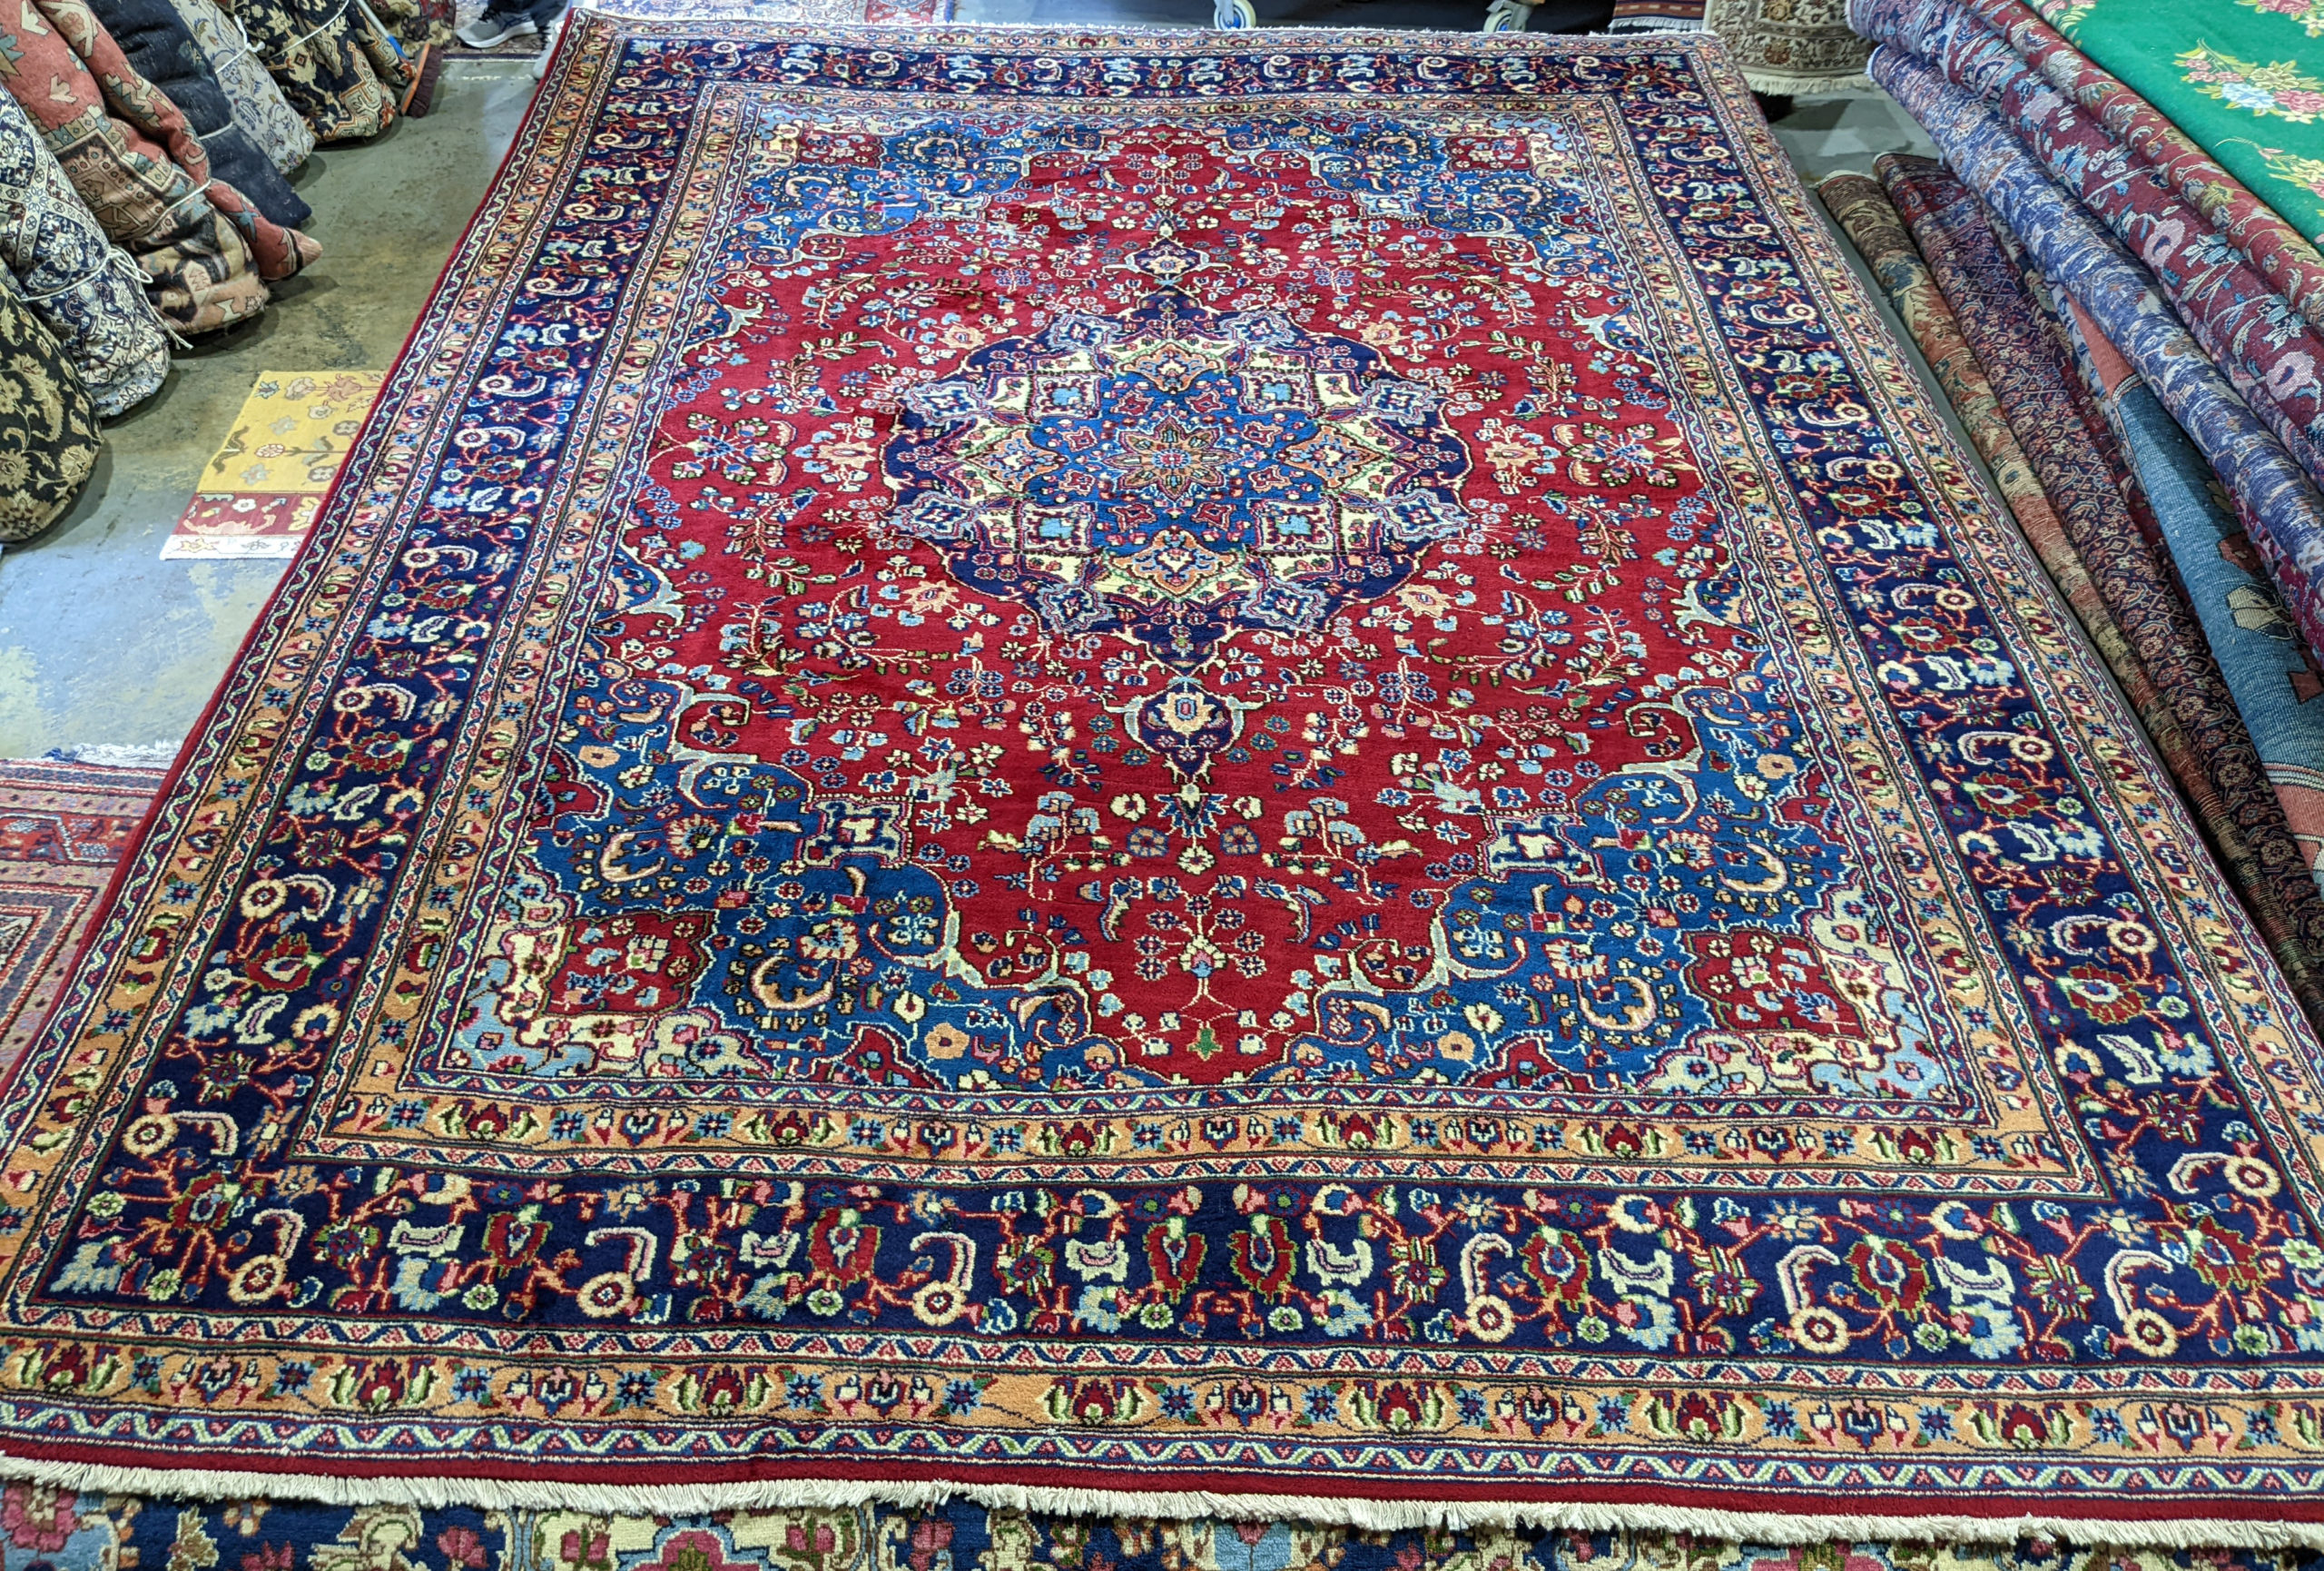 9'9" x 13' Sabzevar Persian Rug